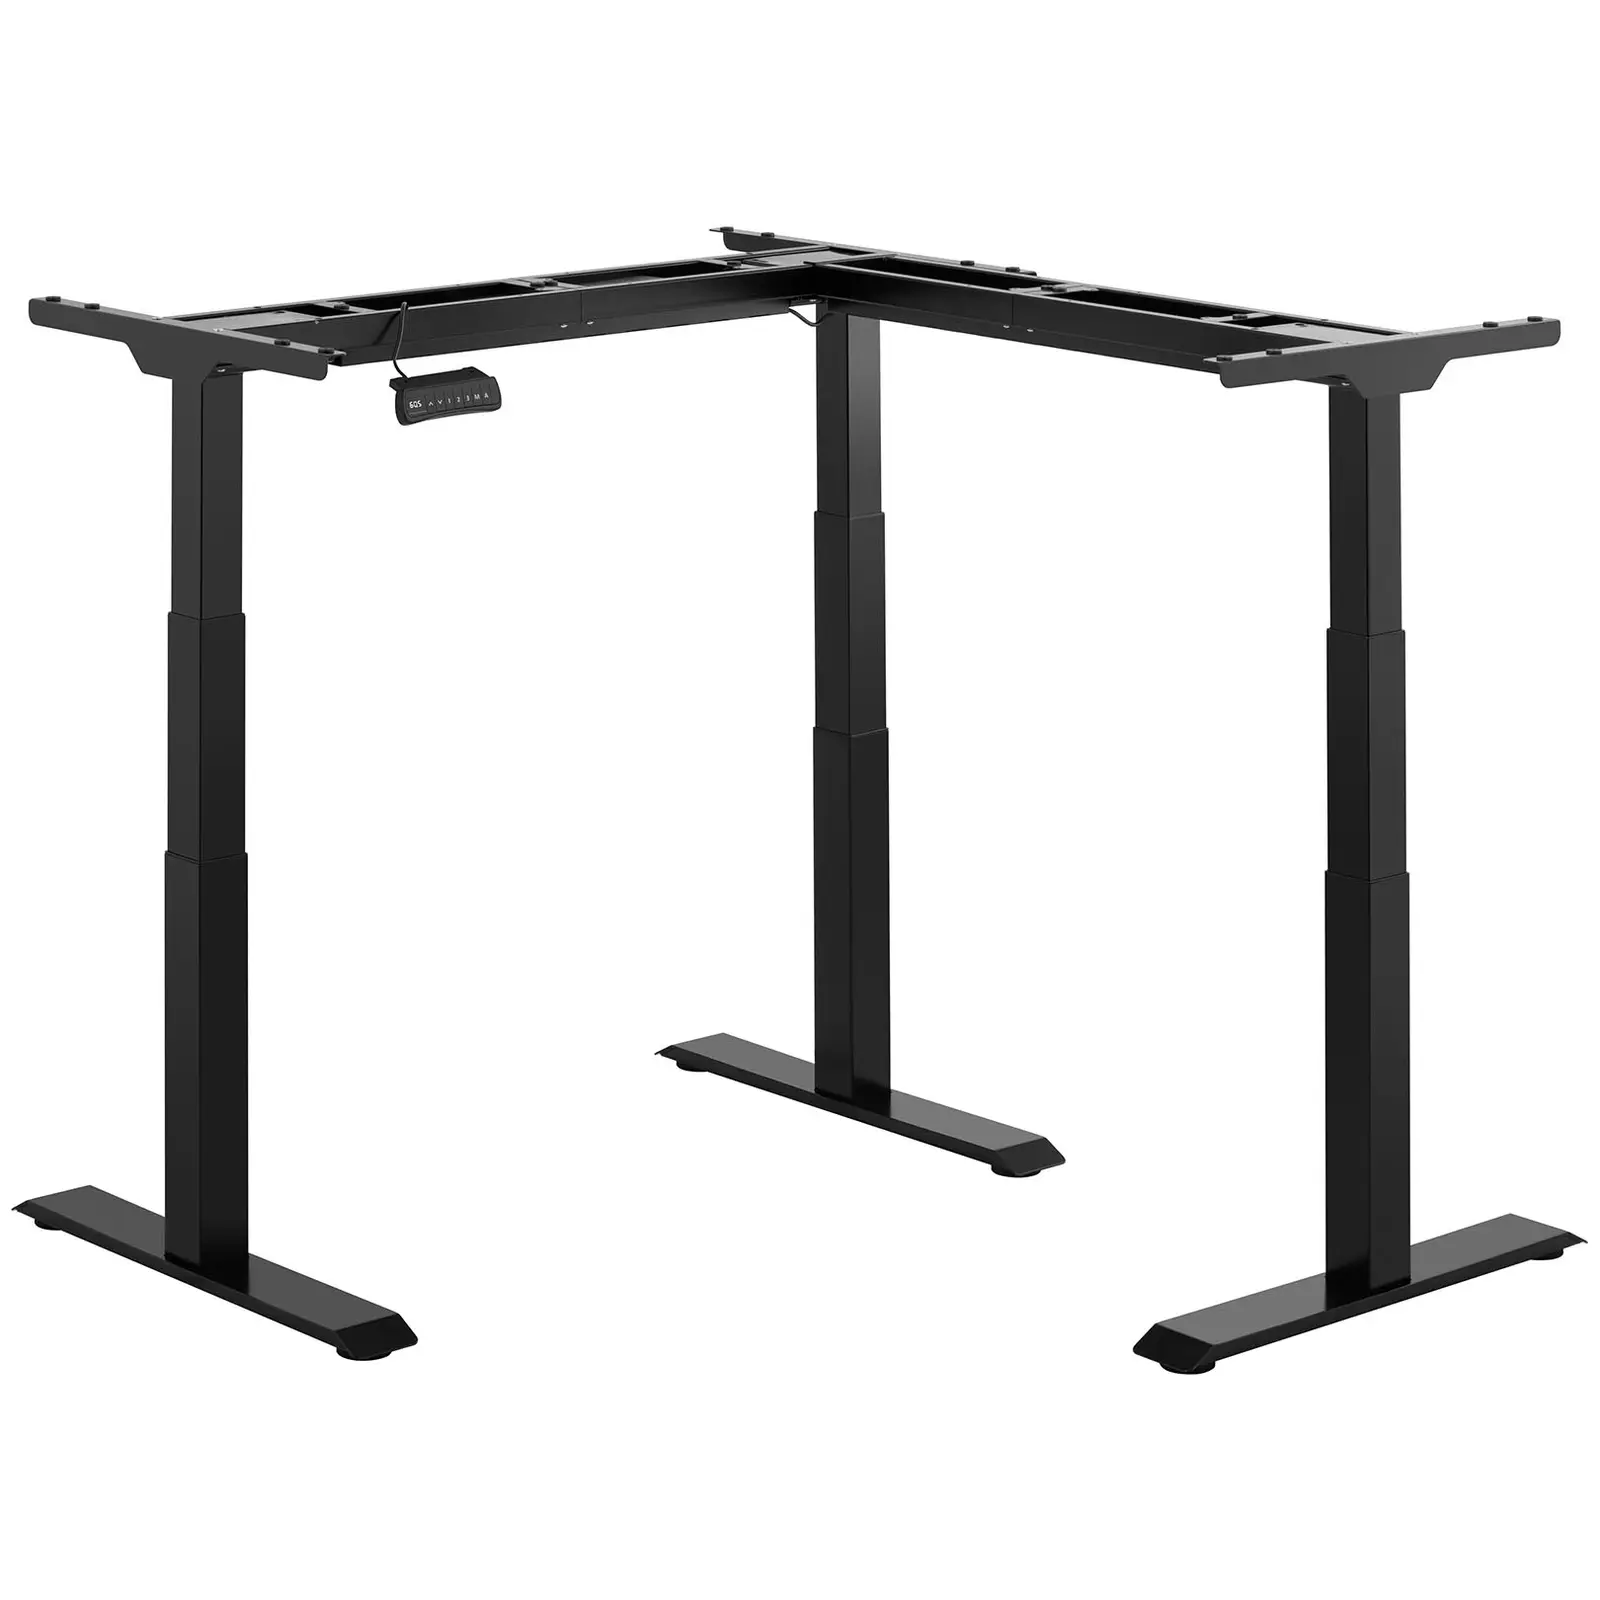 Bastidor para mesa de esquina con ajuste de altura - altura: 58-123 cm - ancho: 90-150 cm (izquierda) / 110-190 cm (derecha) - ángulo: 90° - 150 kg